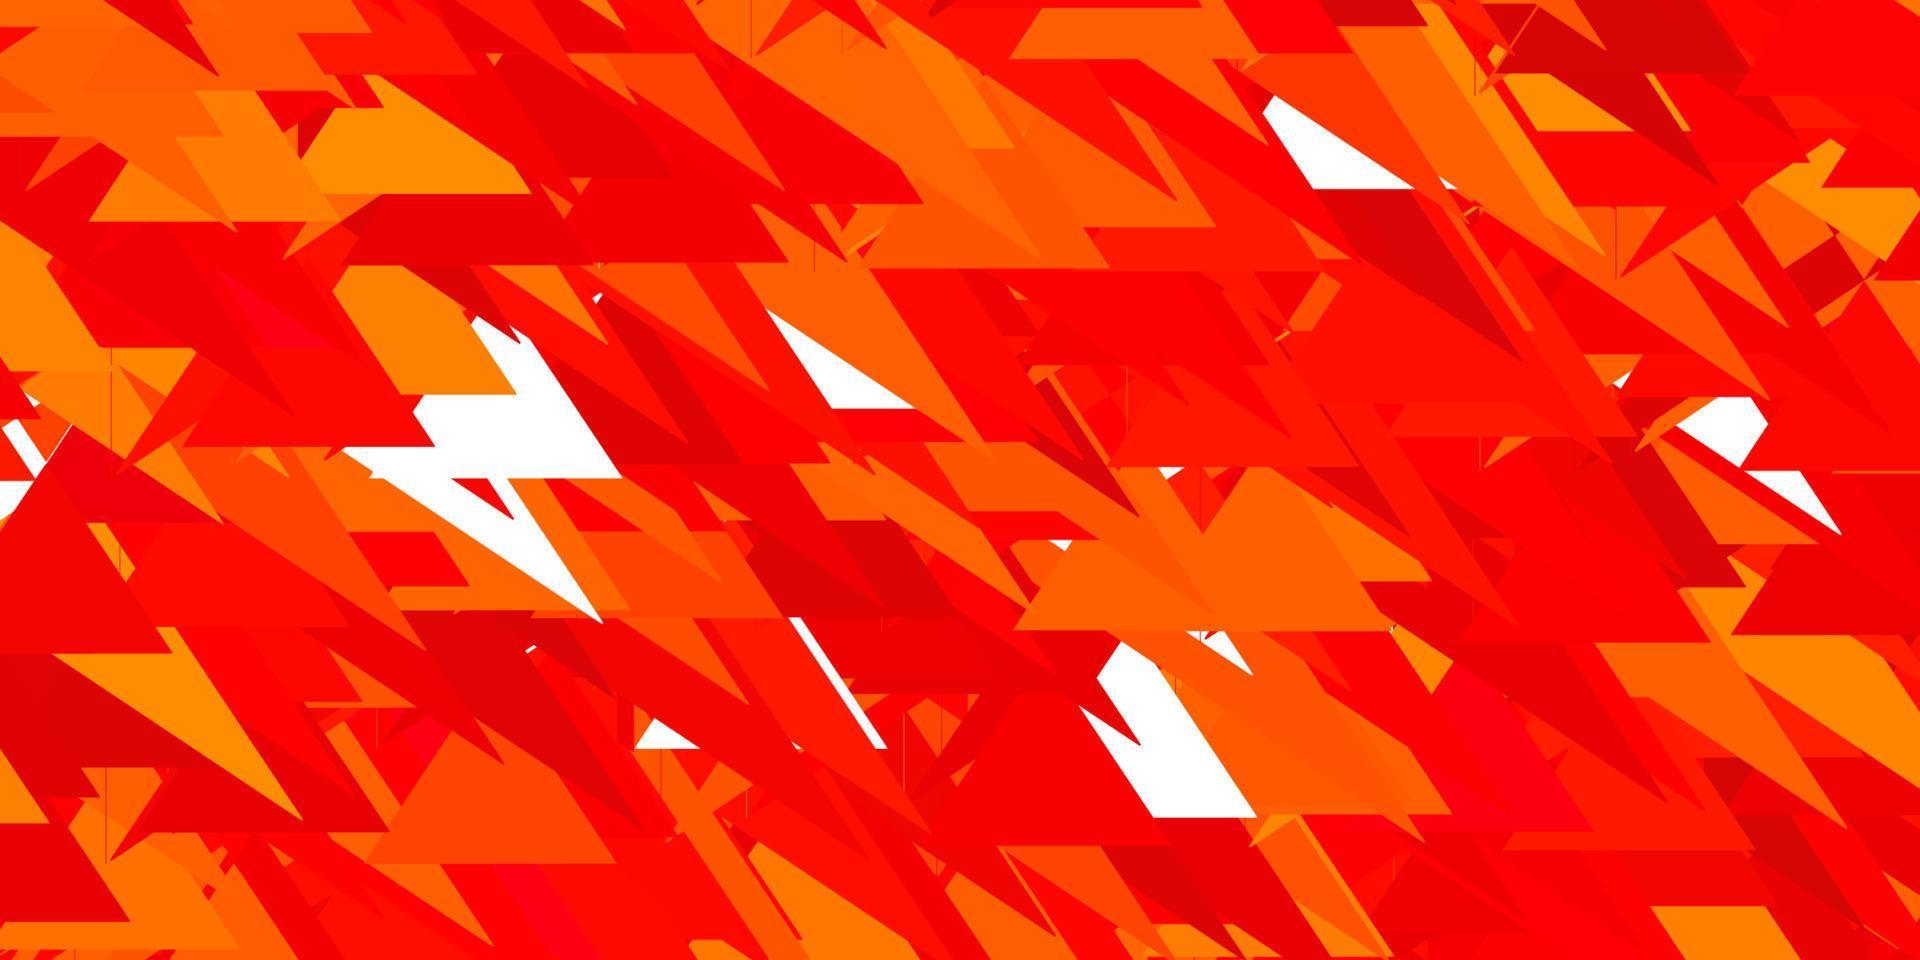 luz vermelha, amarelo padrão de vetor com formas poligonais.